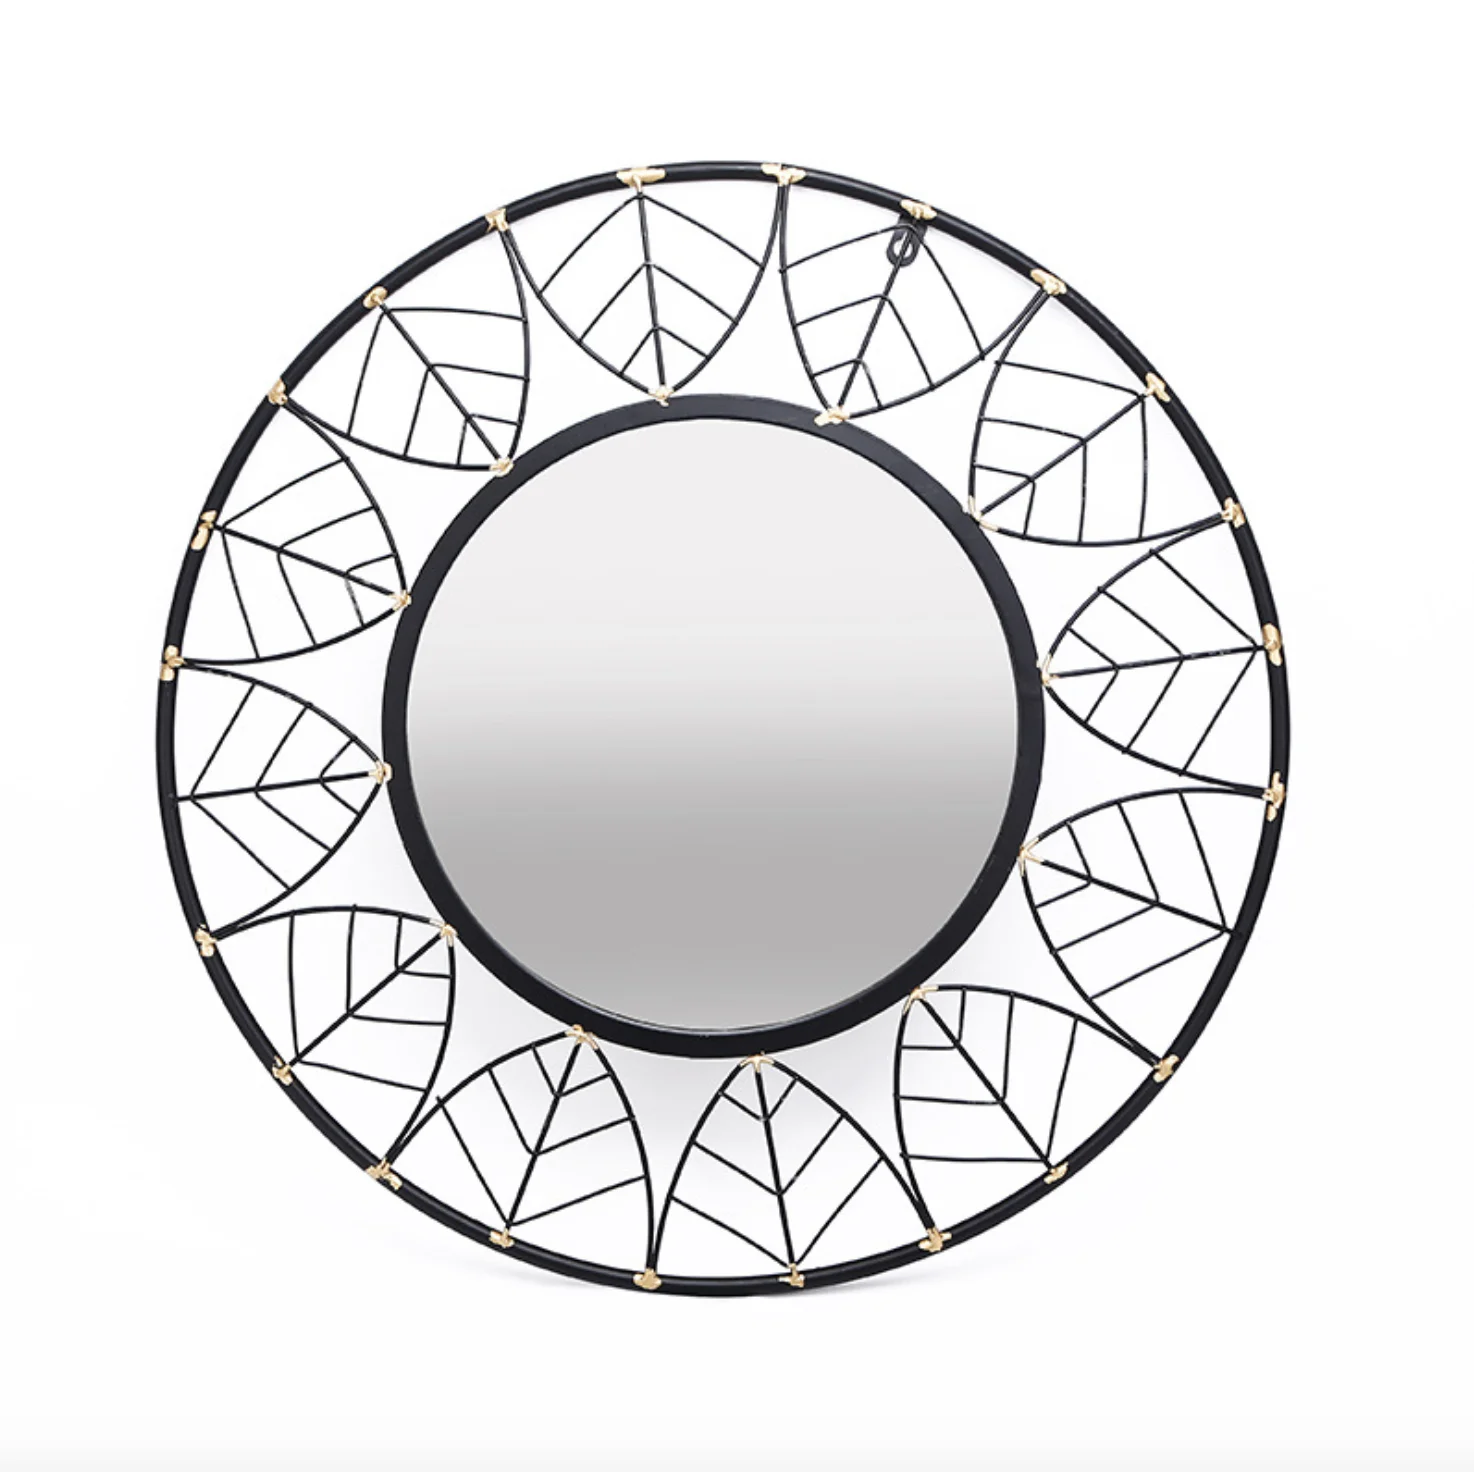 Vòng tường gương trang trí sắt đen sẽ là điểm nhấn hoàn hảo cho không gian nhà bạn. Hình dạng tròn trịa giúp phản chiếu ánh sáng tốt hơn, tạo nên một không gian rộng lớn và sang trọng. Khung sắt đen chắc chắn và đẹp mắt thêm phần quyến rũ và bắt mắt hơn.